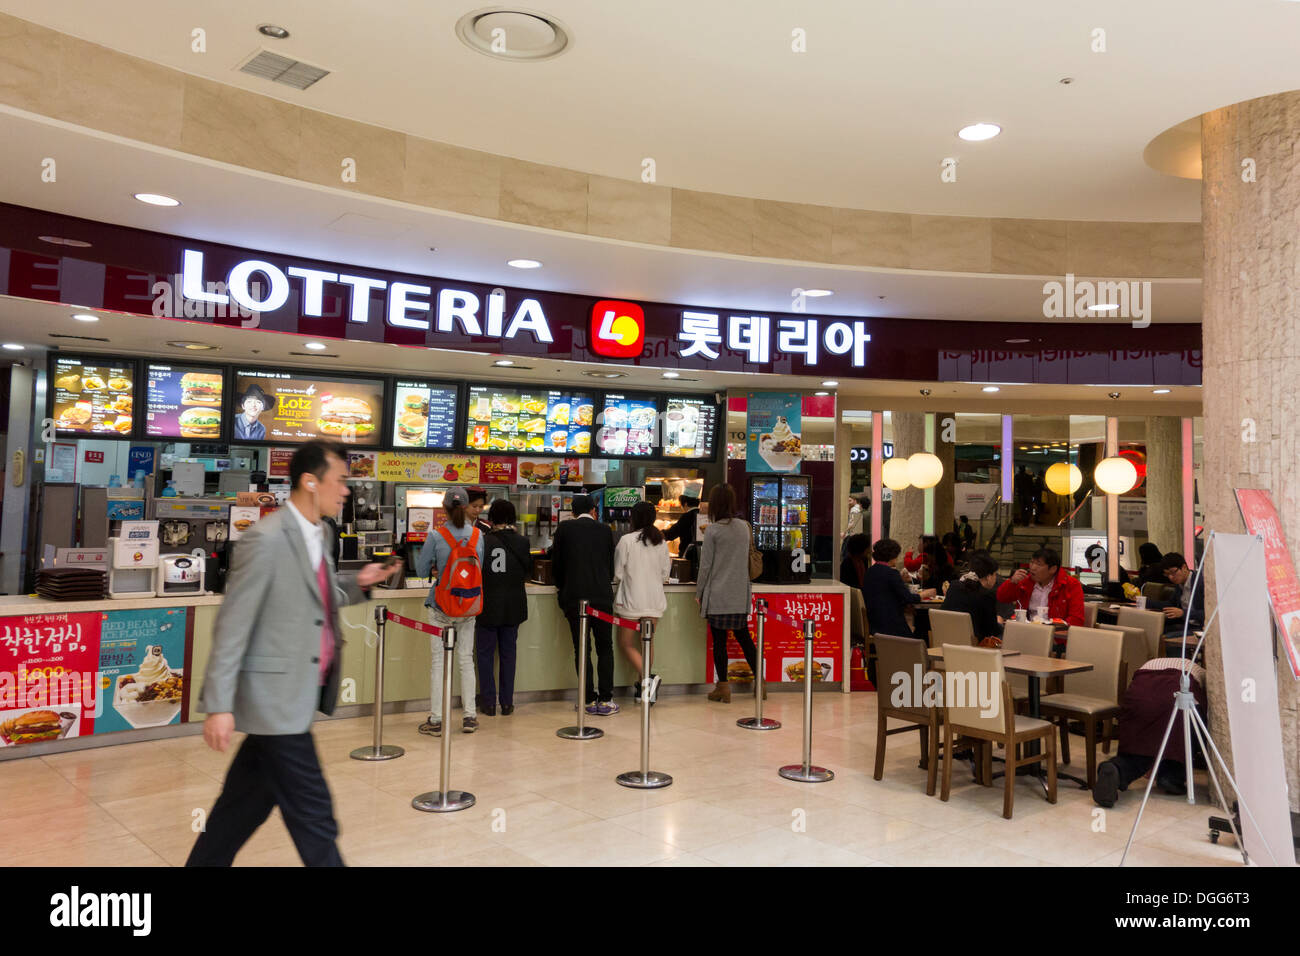 Lotteria chaîne fast food restaurant à Séoul, Corée Banque D'Images